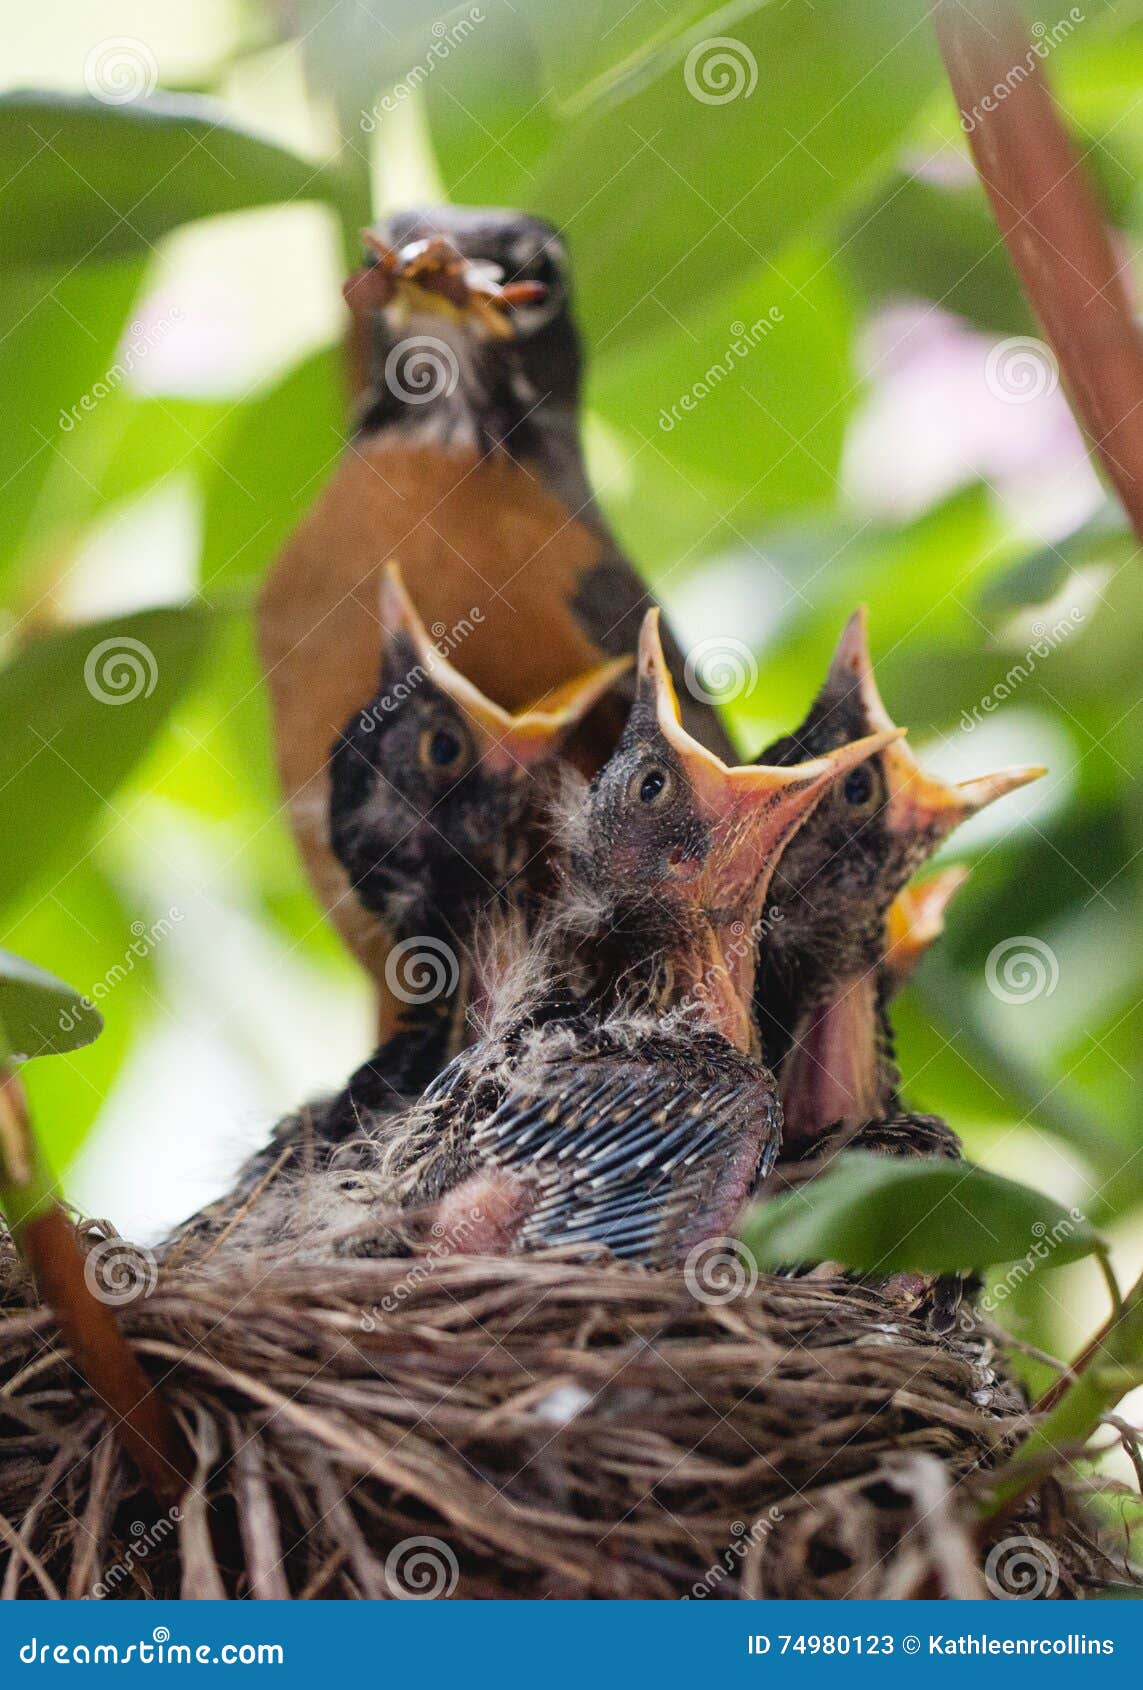 baby robins open beaks